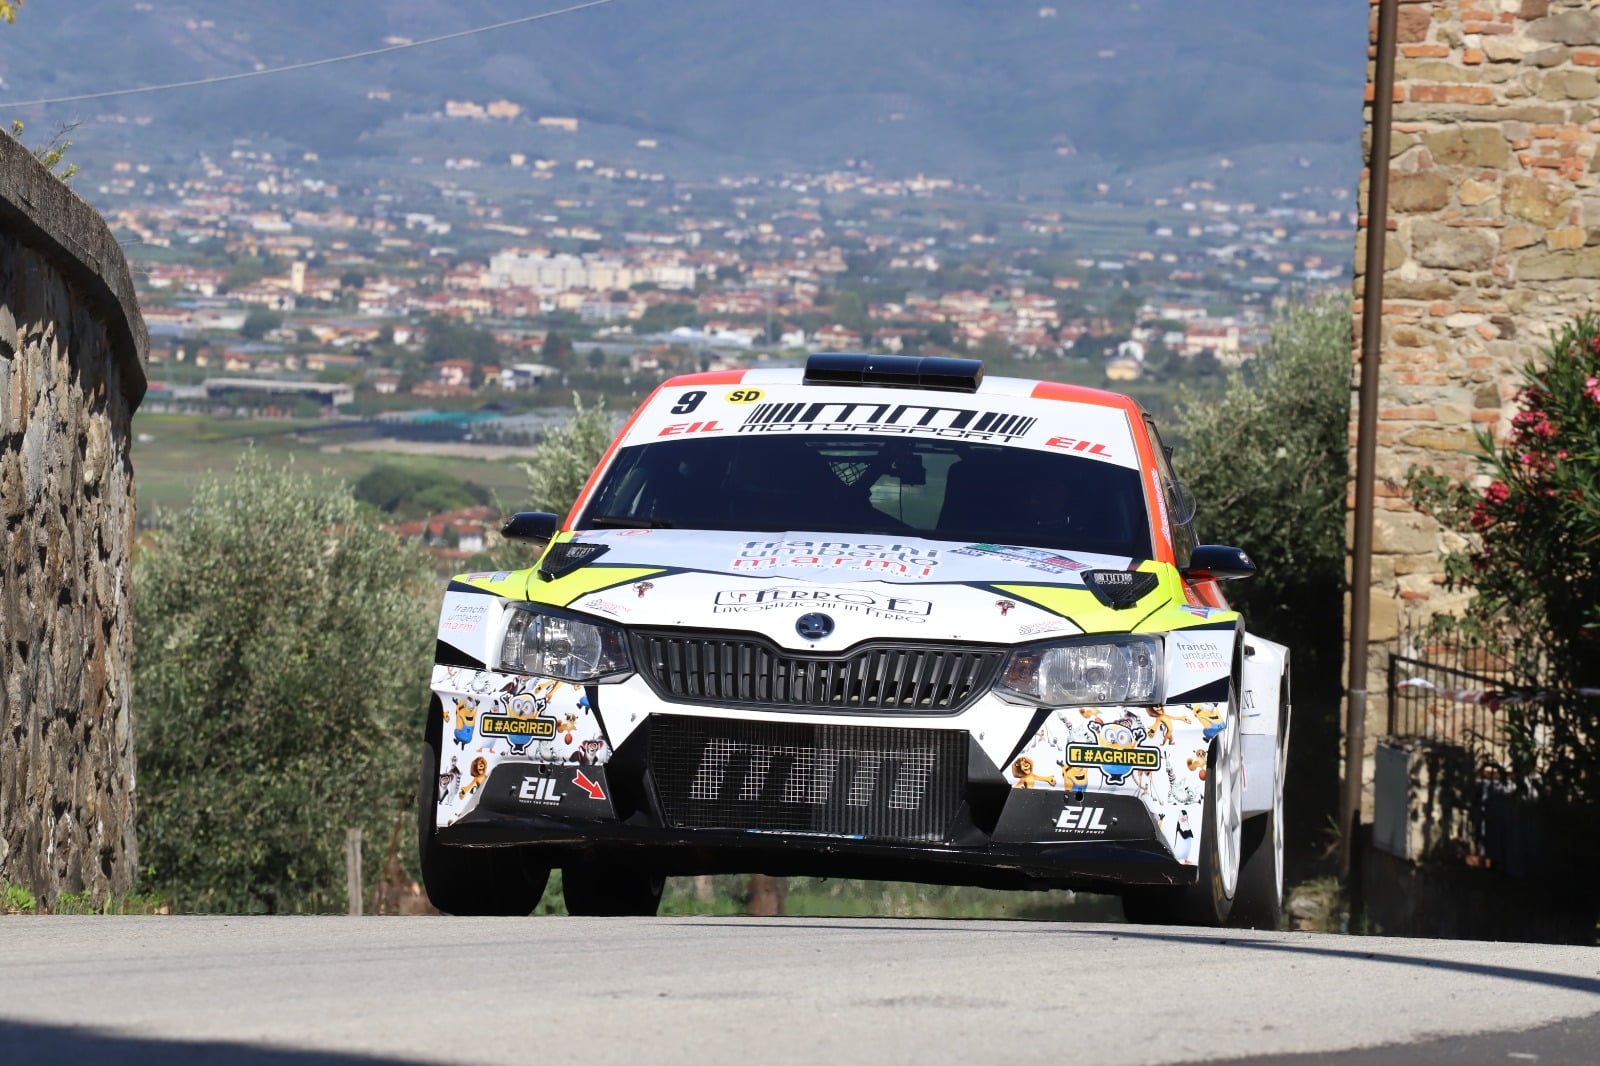 lucca,-mm-motorsport-al-motors-rally-show-con-davide-giovanetti-e-la-skoda-fabia-rally2-evo-–-toscana-news